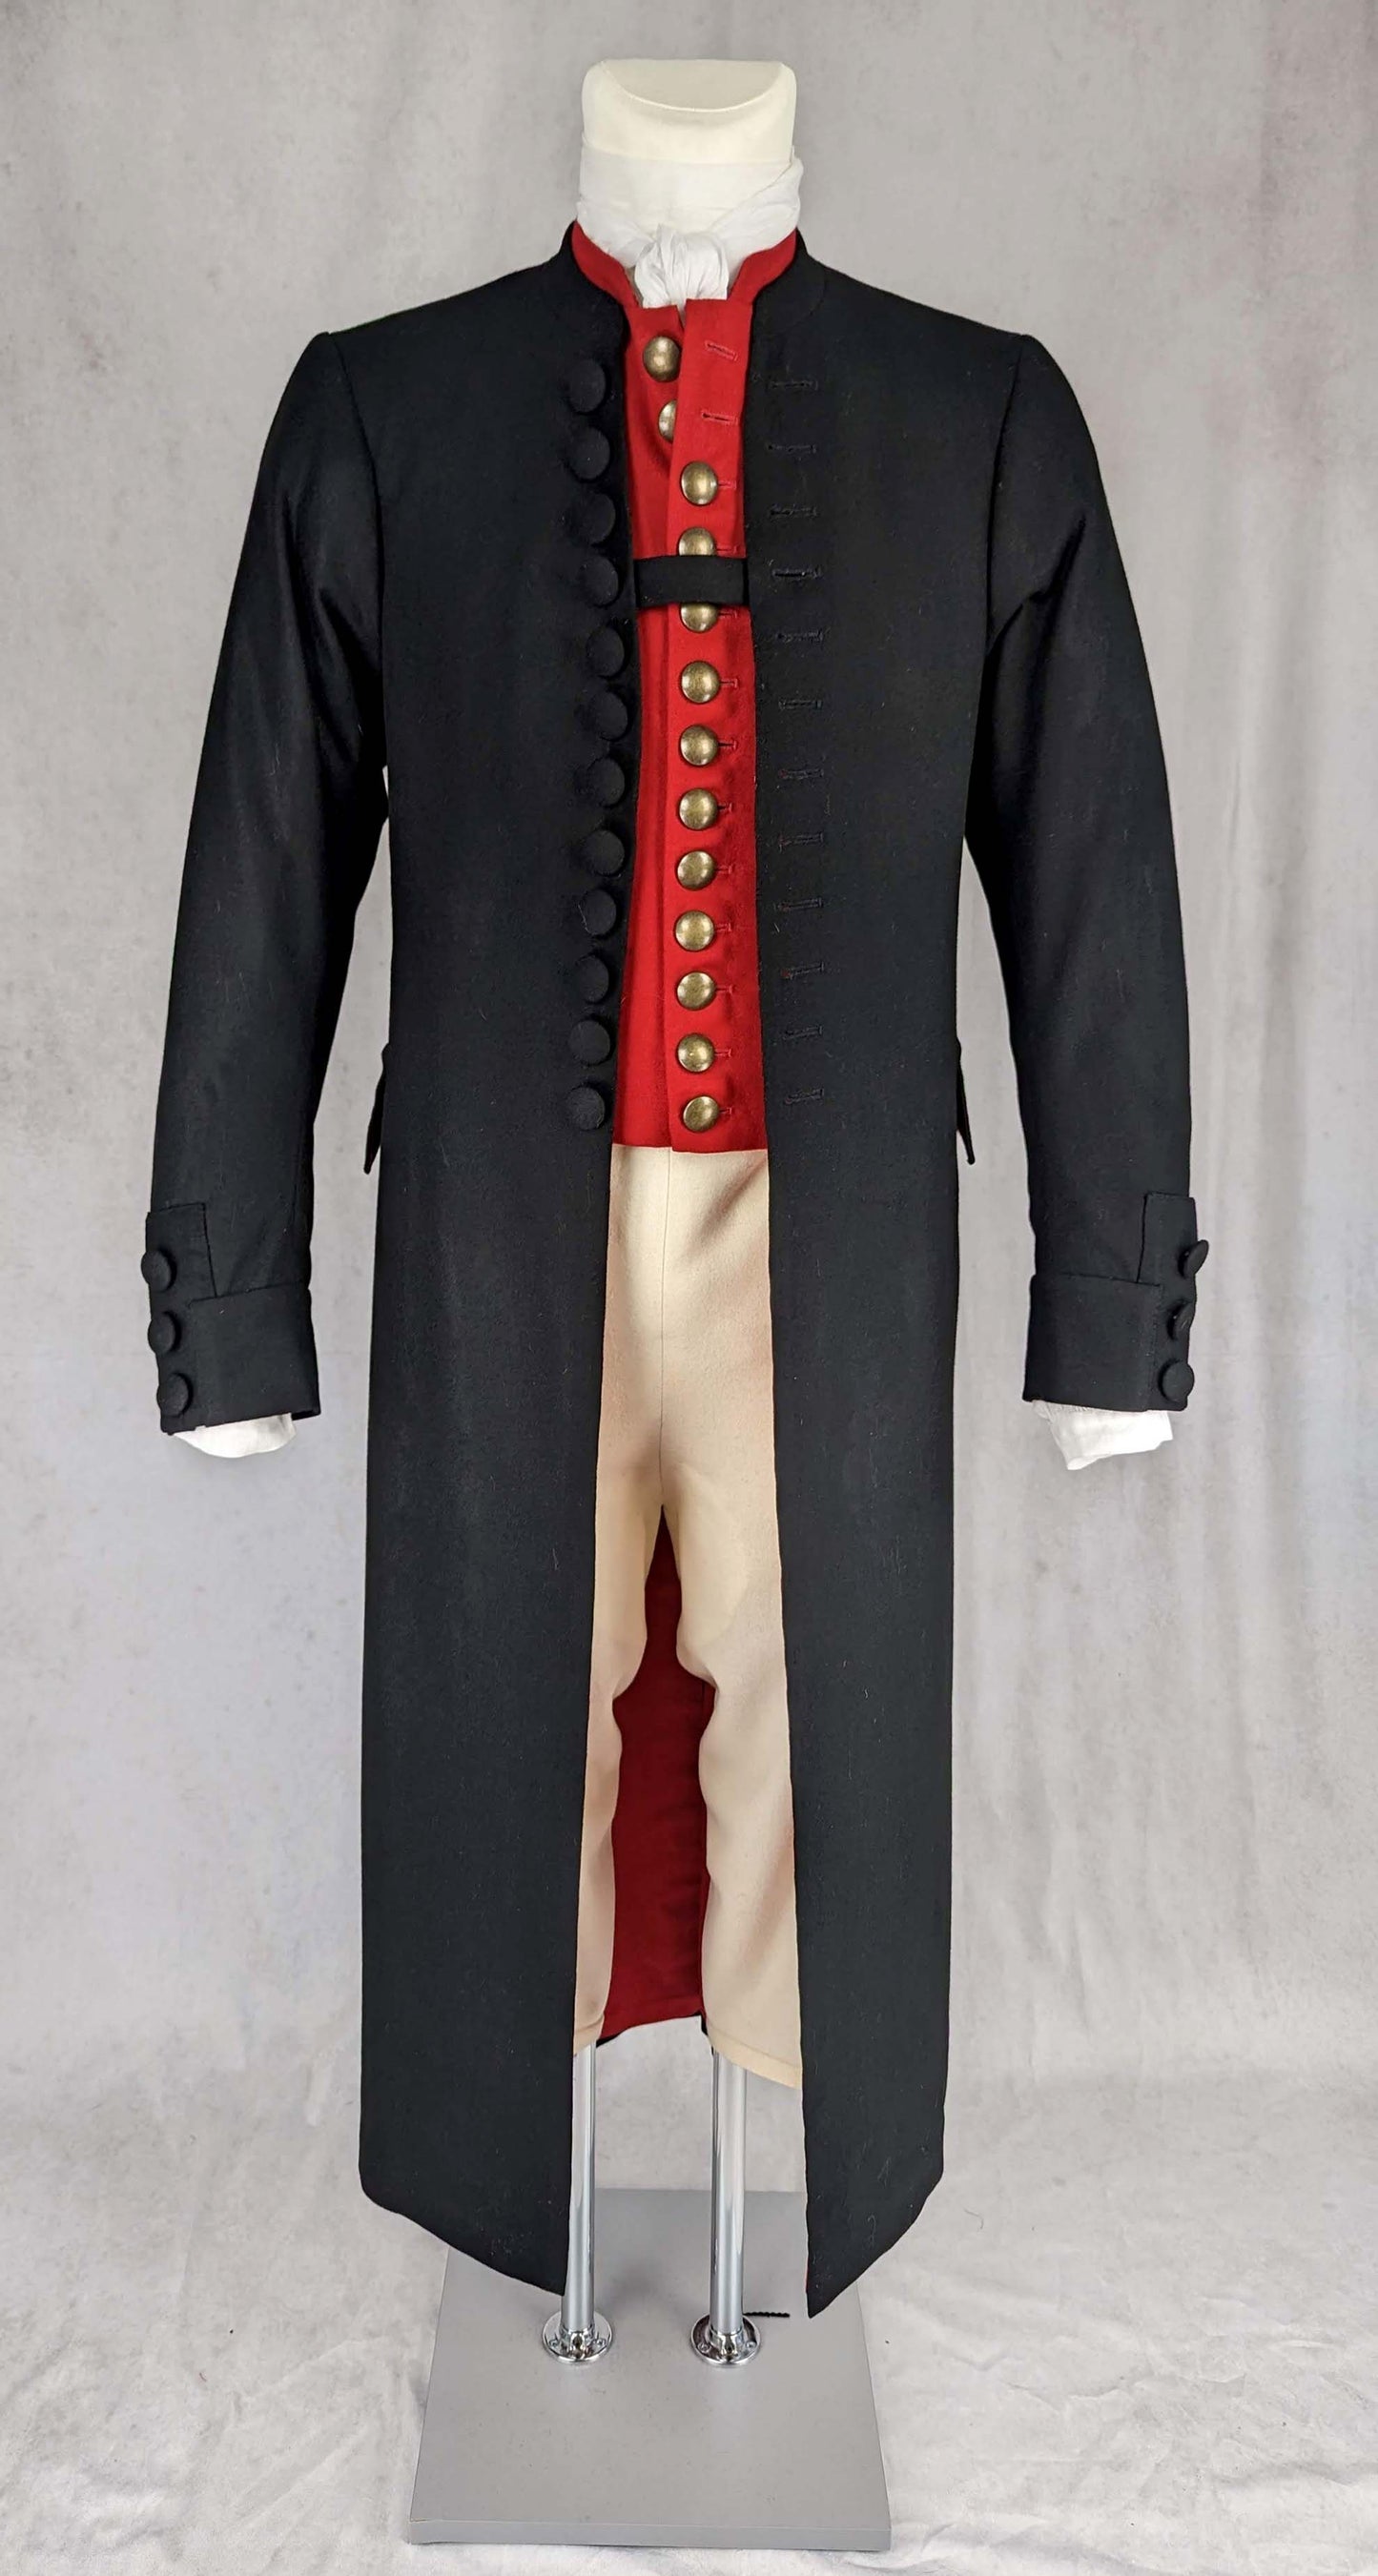 #0123 Franconian Men´s Coat around 1850 Sewing Pattern Size US 34-56 (EU 44-66) PDF Download